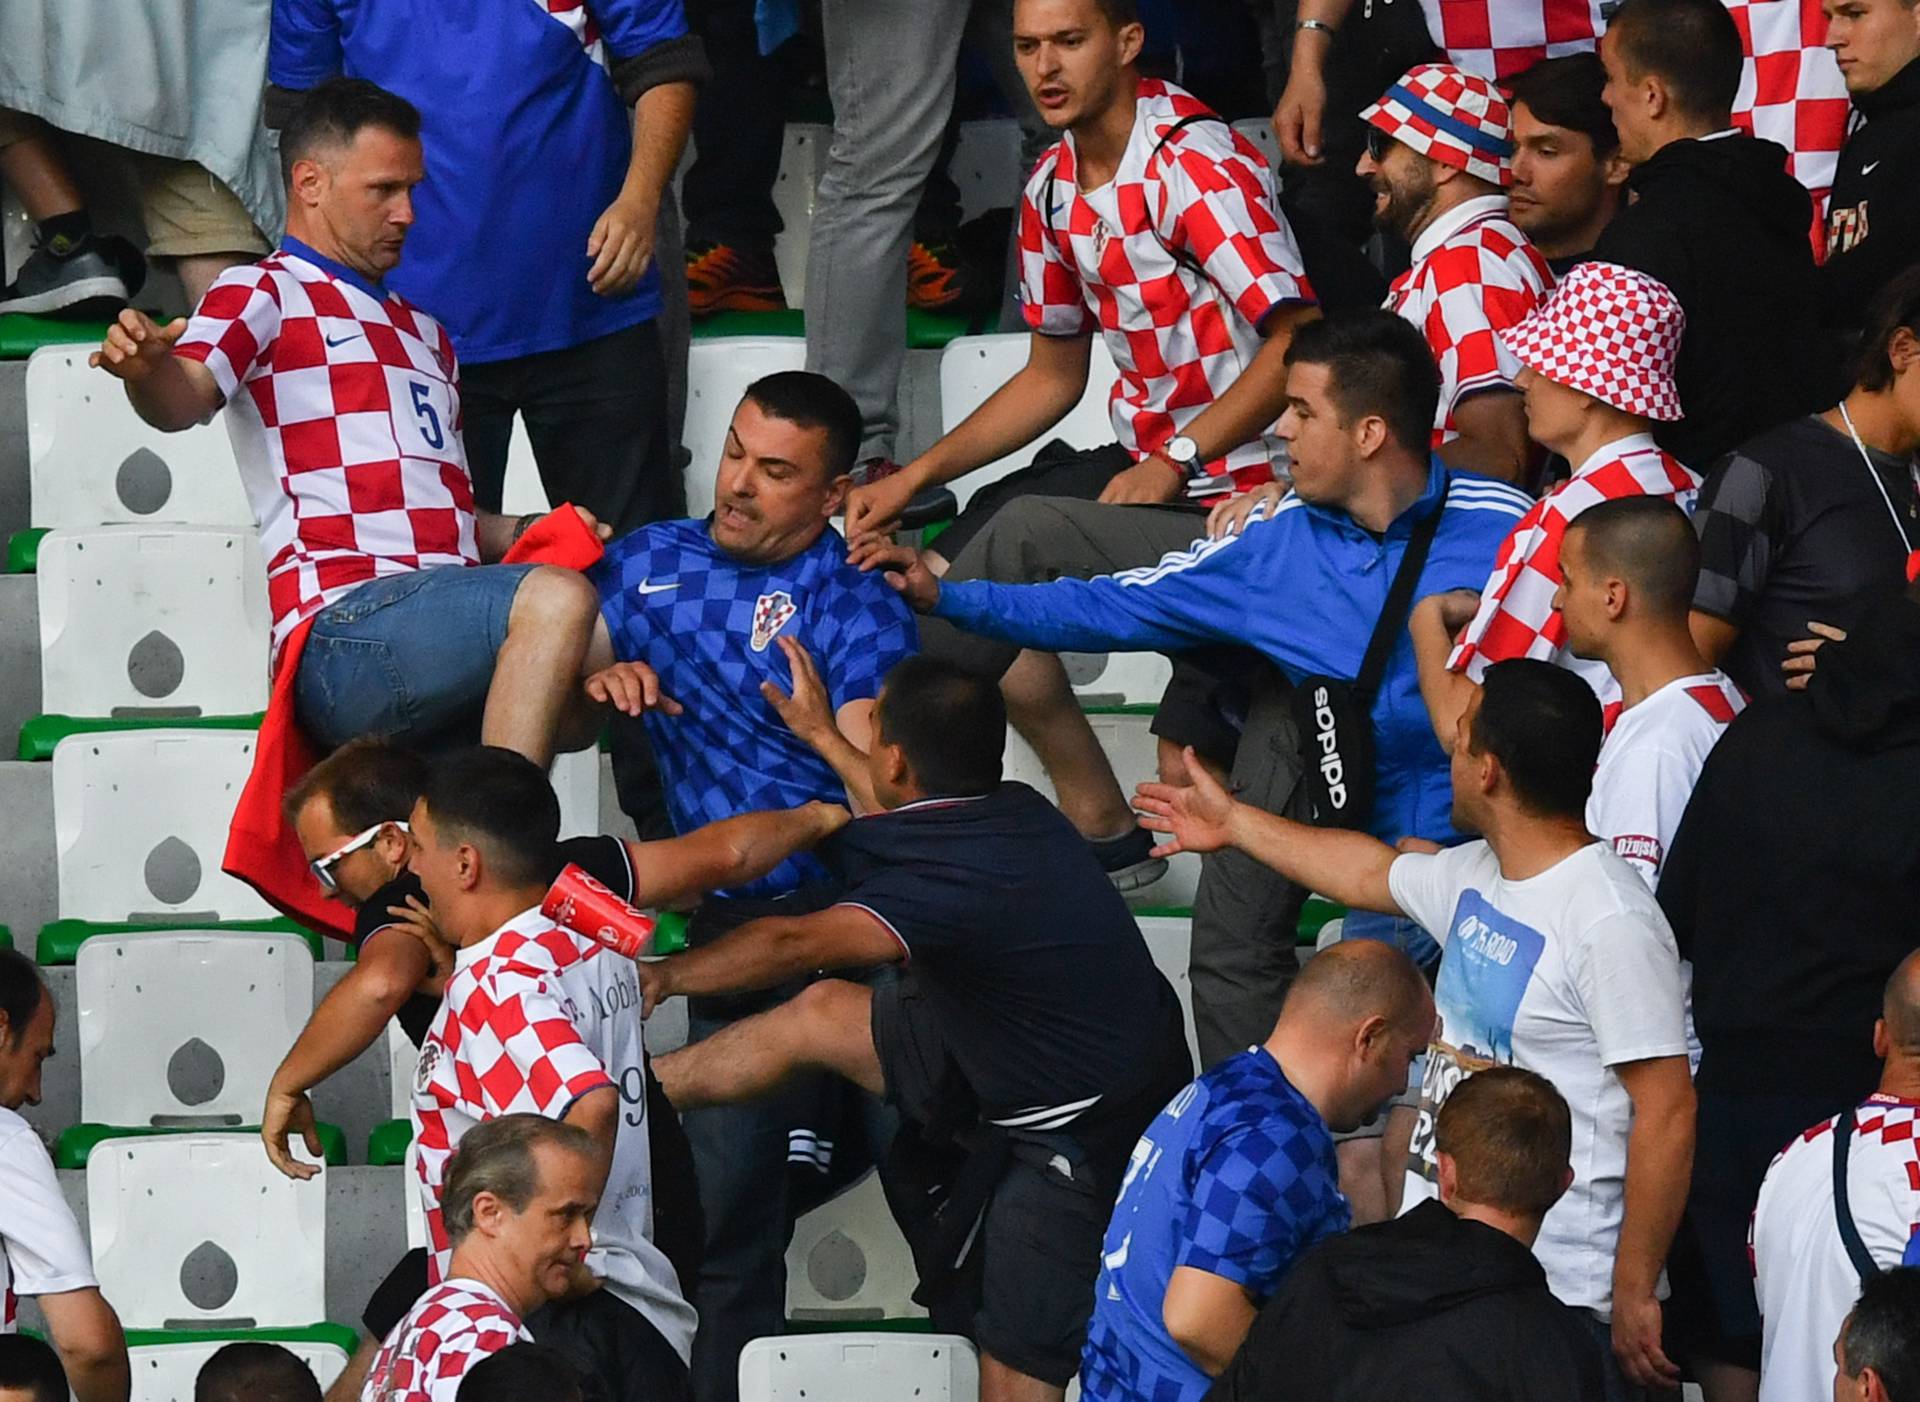 Euro 2016 Group D Czech Republic - Croatia